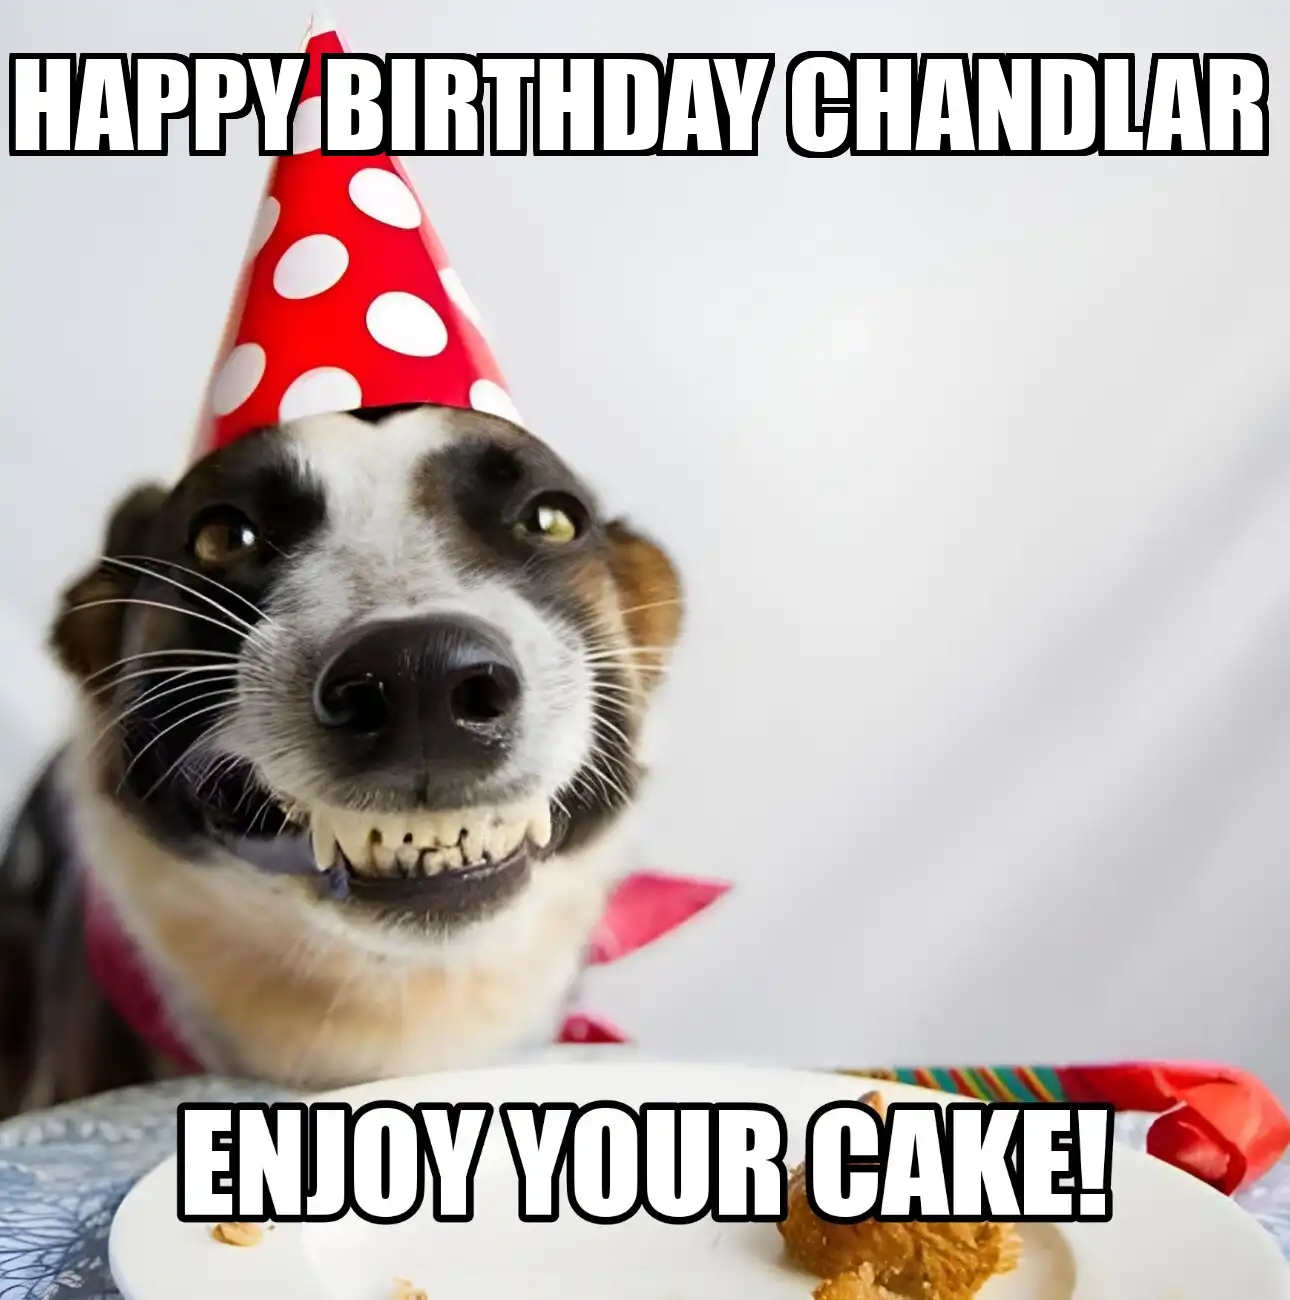 Happy Birthday Chandlar Enjoy Your Cake Dog Meme